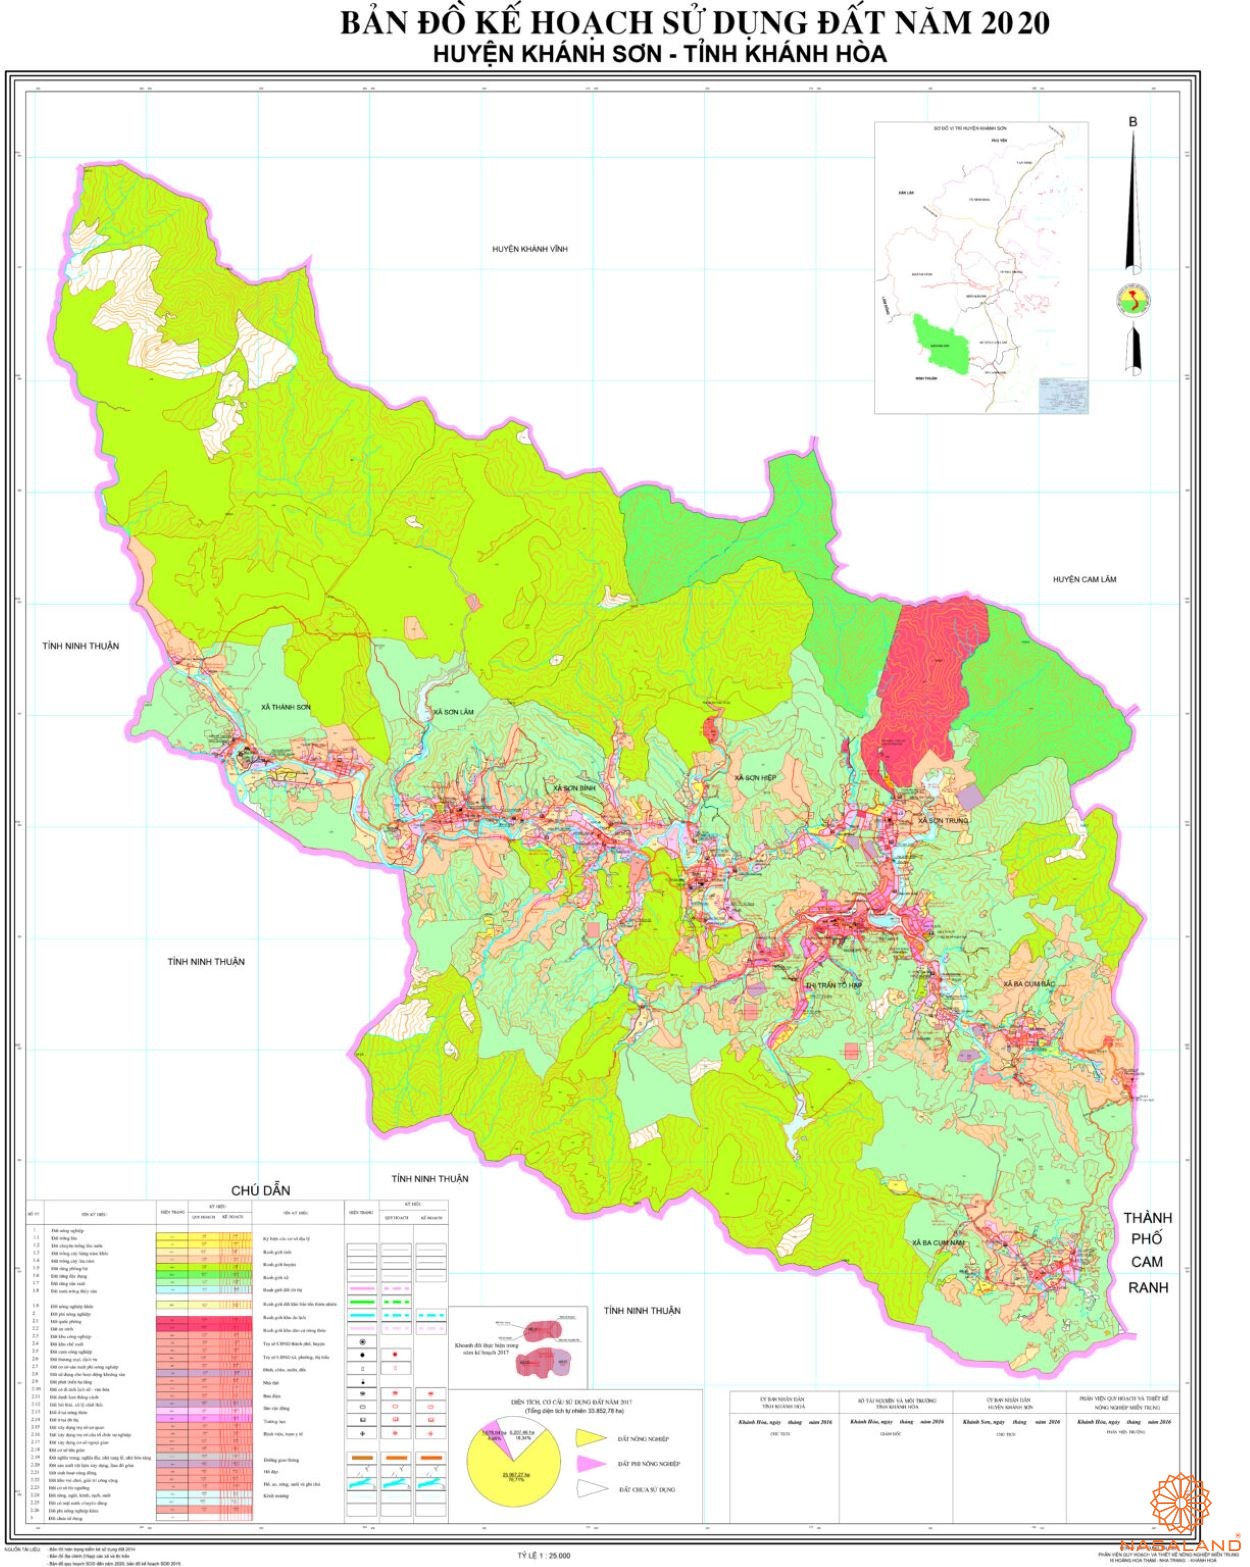 Bản đồ kế hoạch sử dụng đất Huyện Khánh Sơn, Tỉnh Khánh Hòa năm 2020